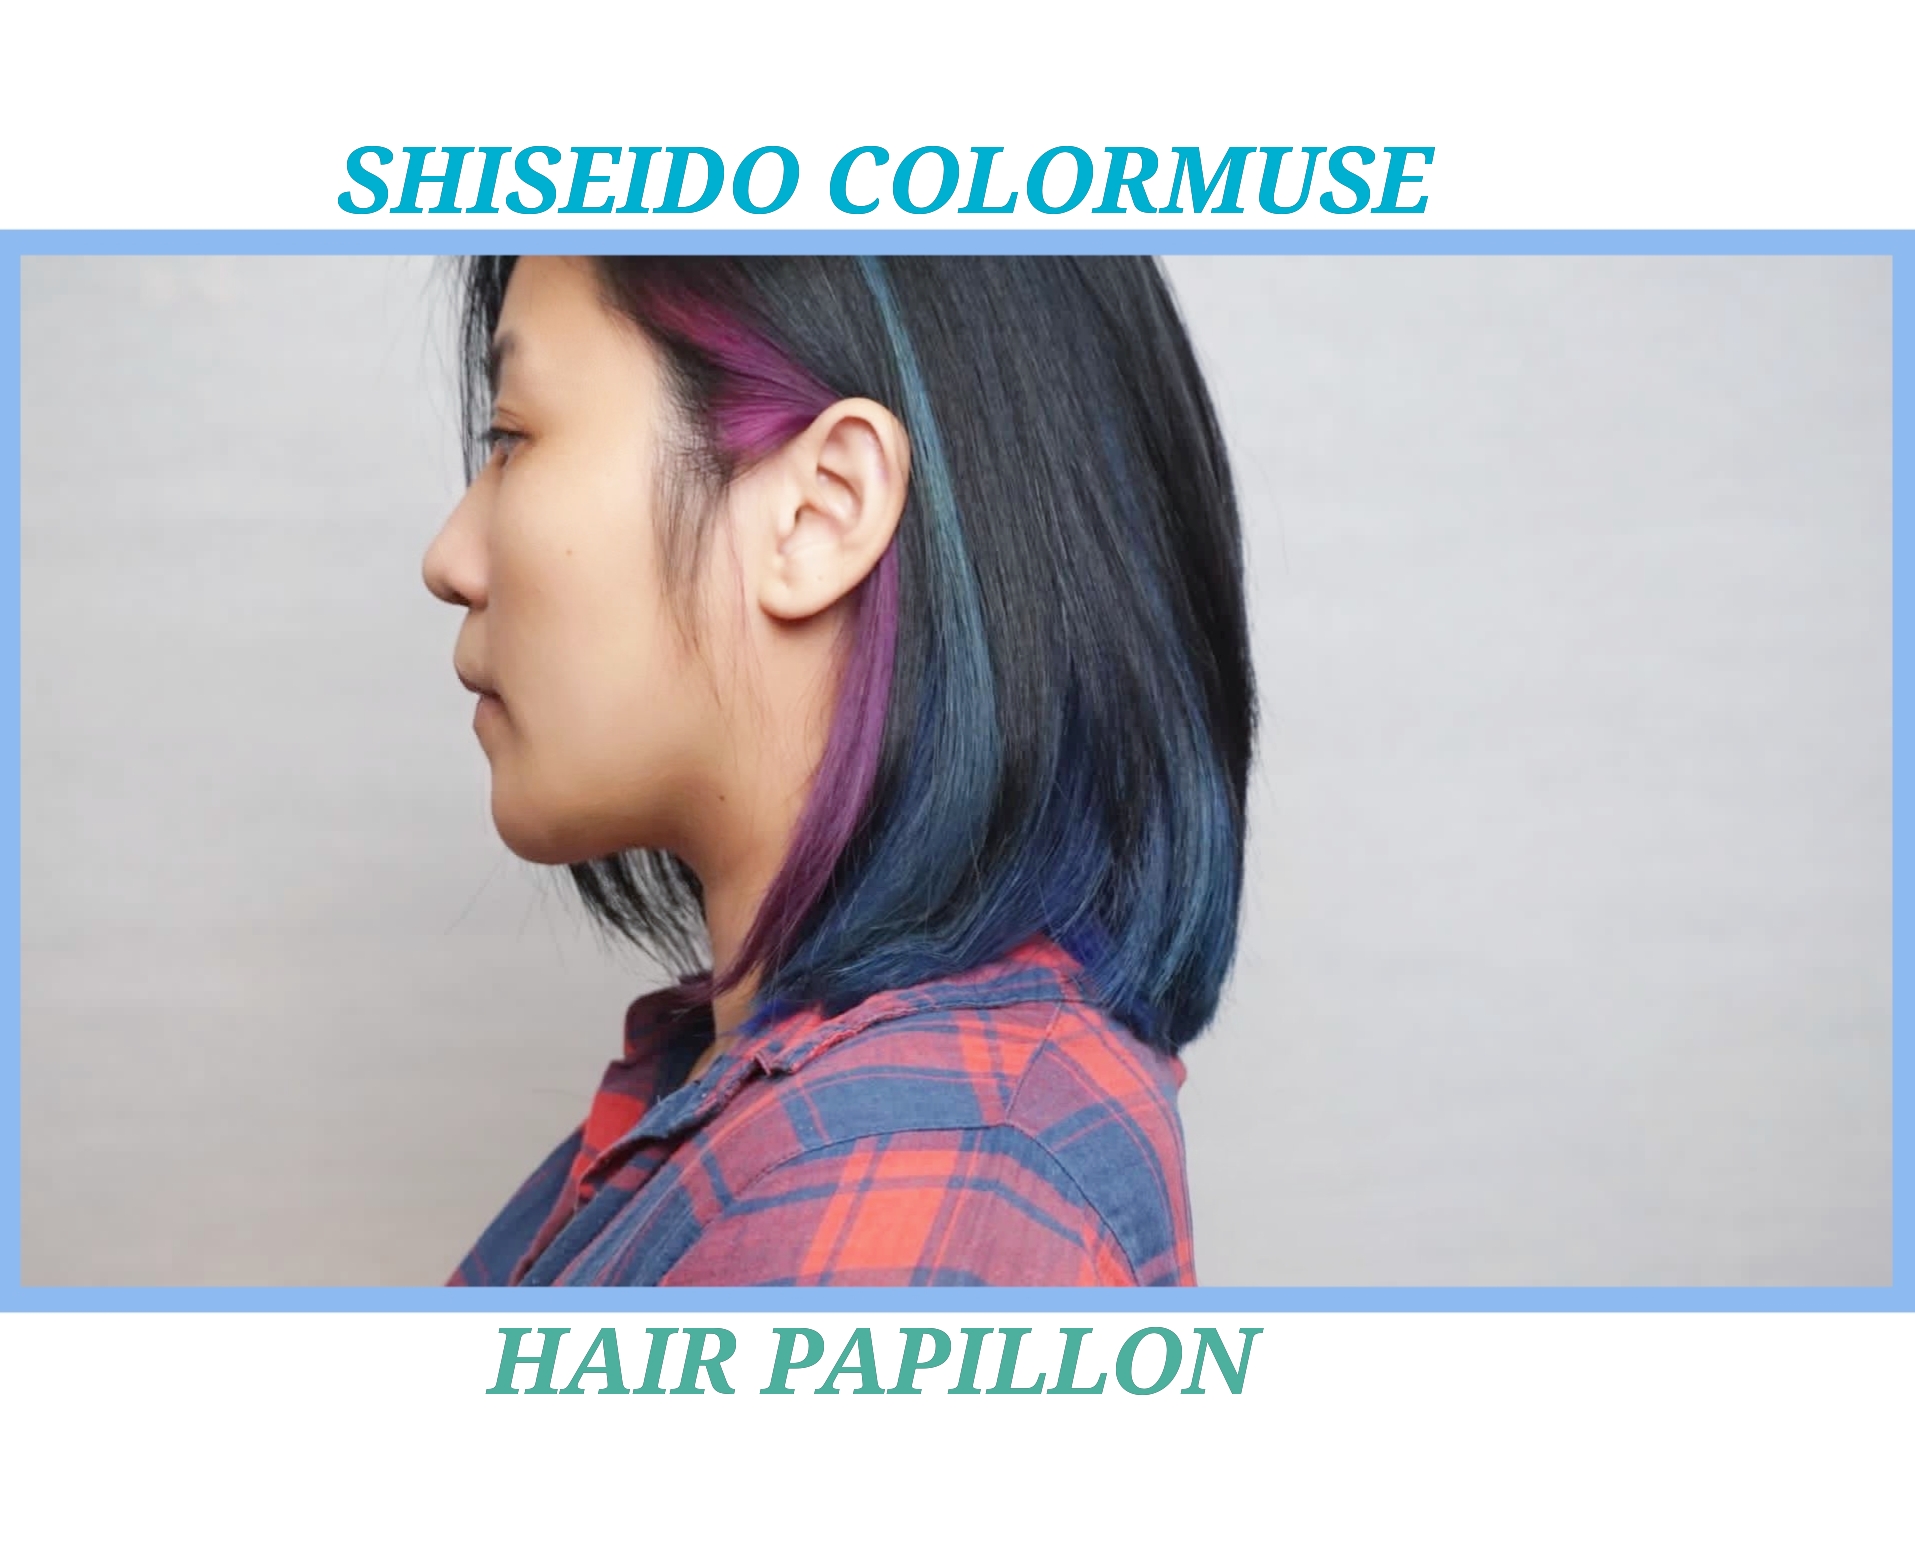 作品参考 / 最新消息:shiseido ultist